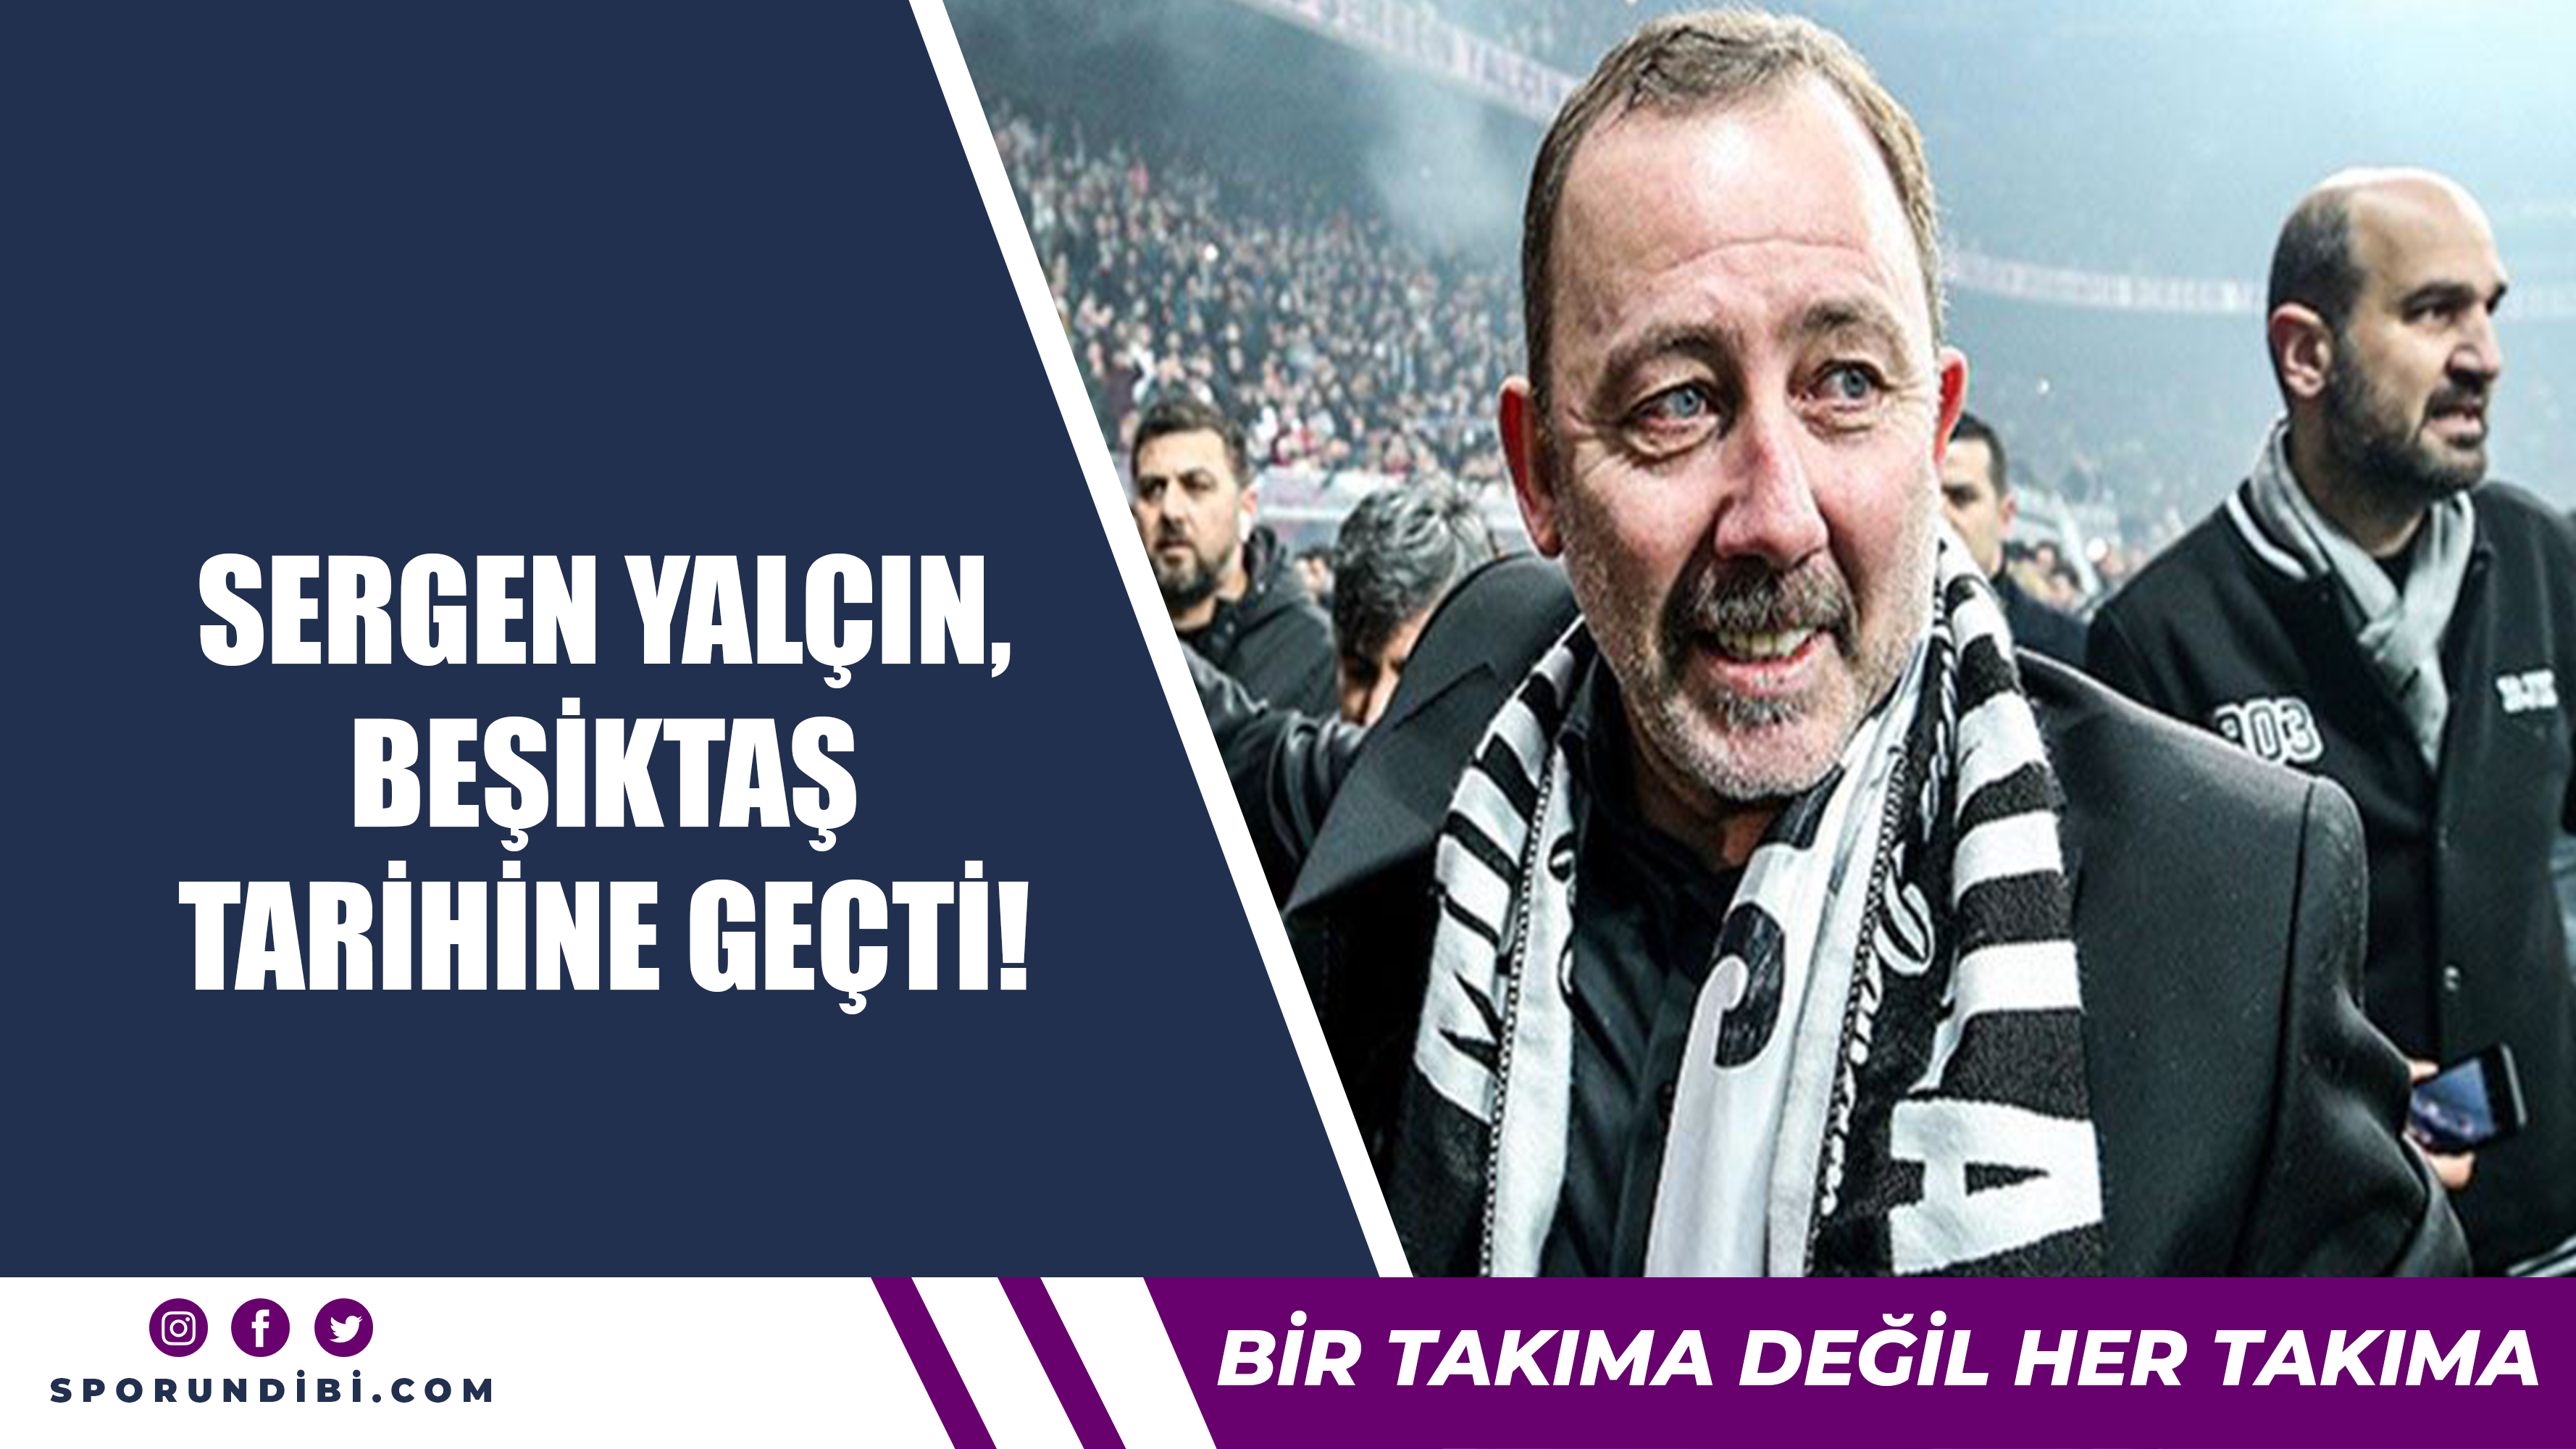 Sergen Yalçın, Beşiktaş tarihine geçti!